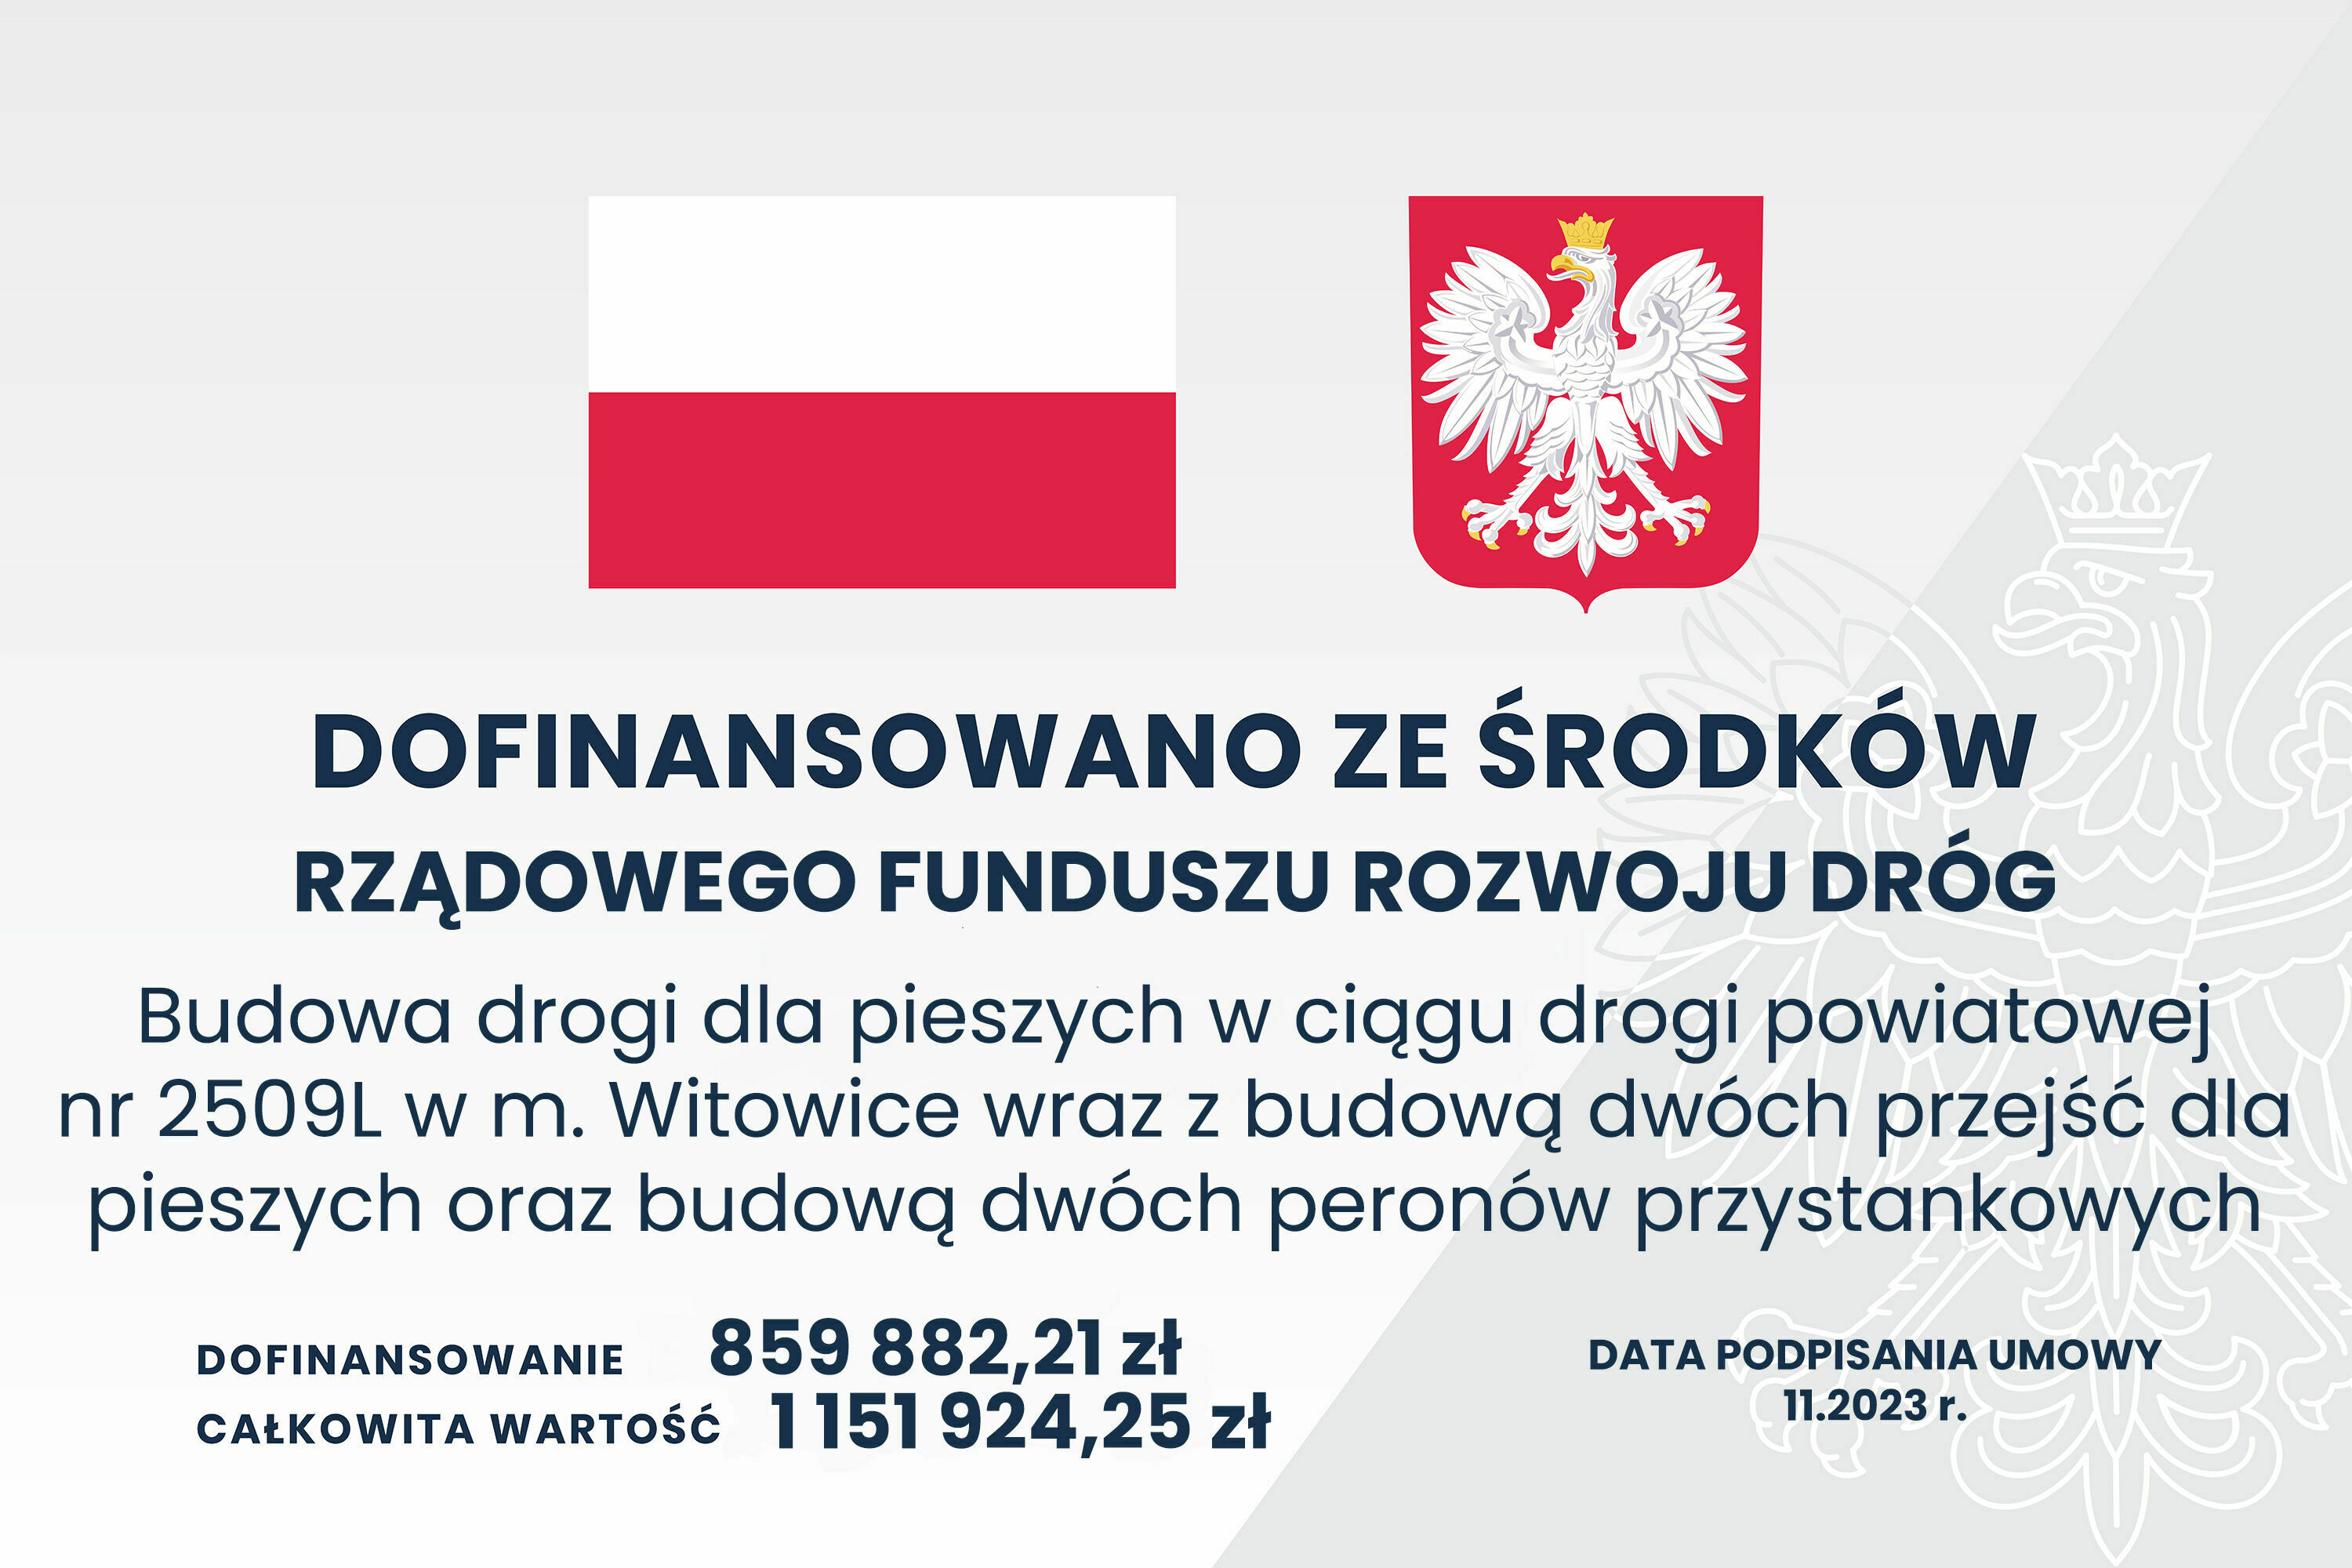 Infografika z polskimi symbolami narodowymi i informacjami o dofinansowaniu budowy drogi z funduszu rządowego, wskazując kwoty i datę umowy.